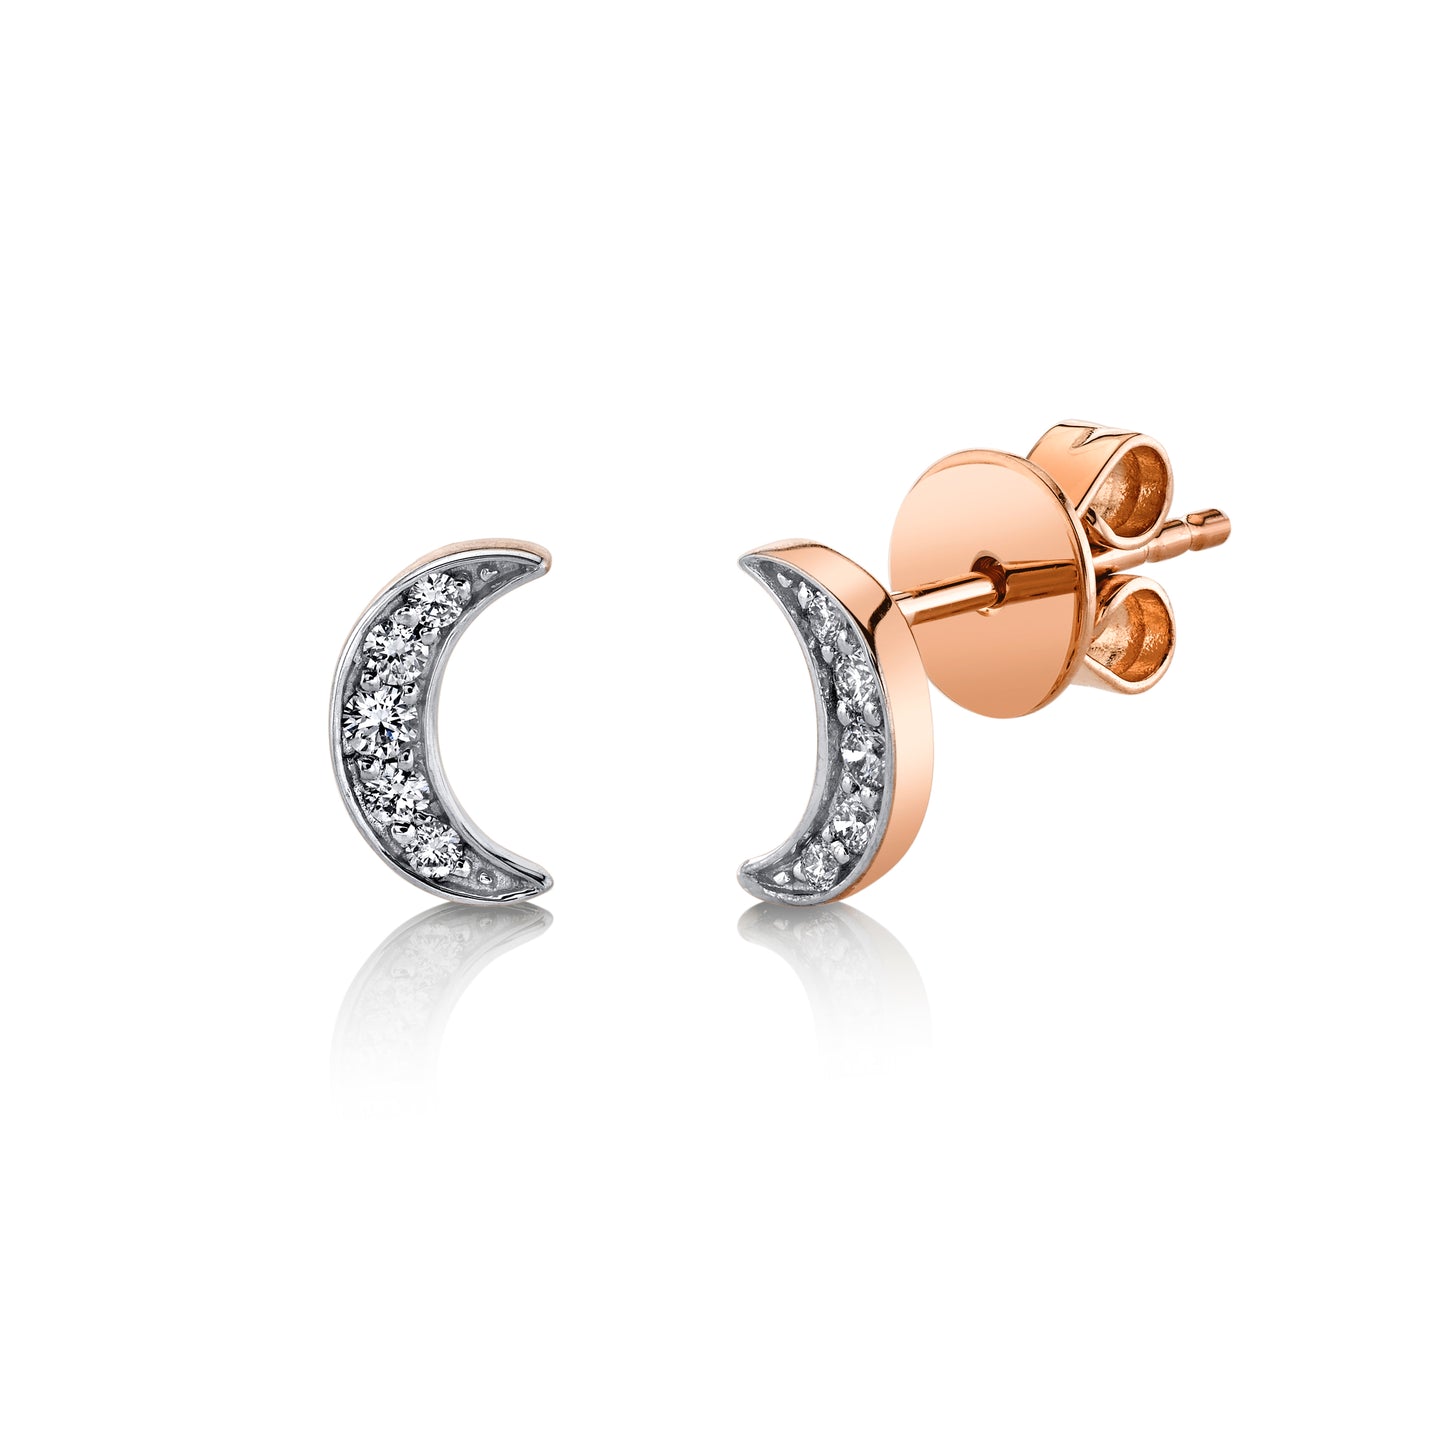 Petite Diamond Moon Stud Earrings in 14K Gold